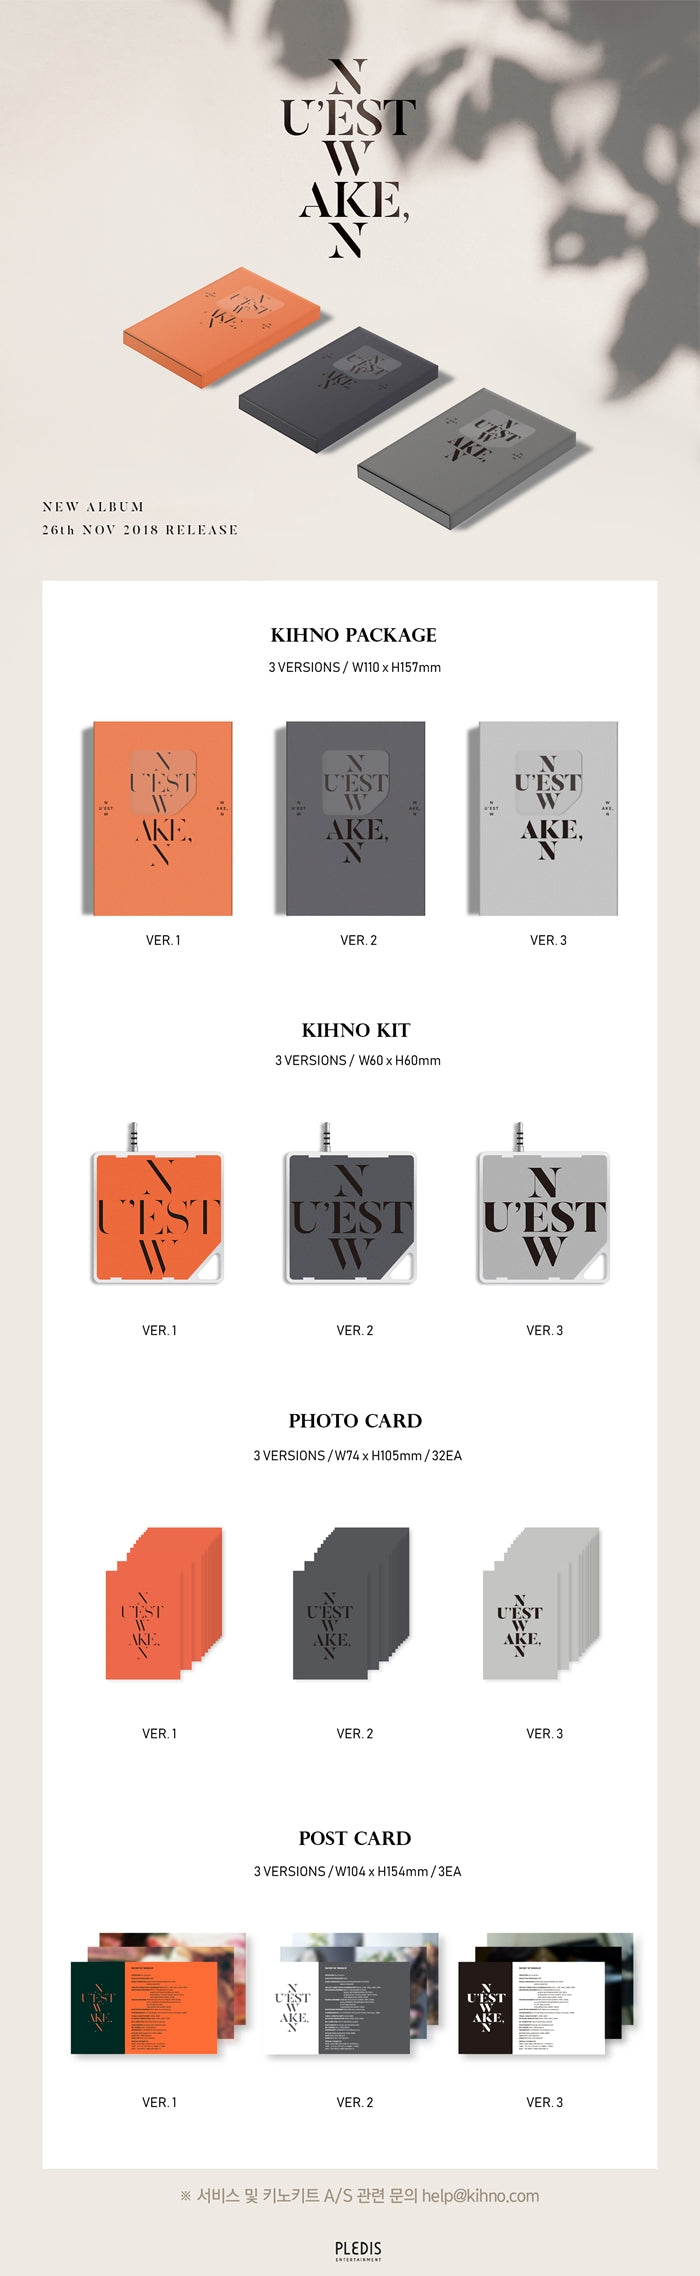 1 Kihno Kit
32 Photo Cards
3 Post Cards